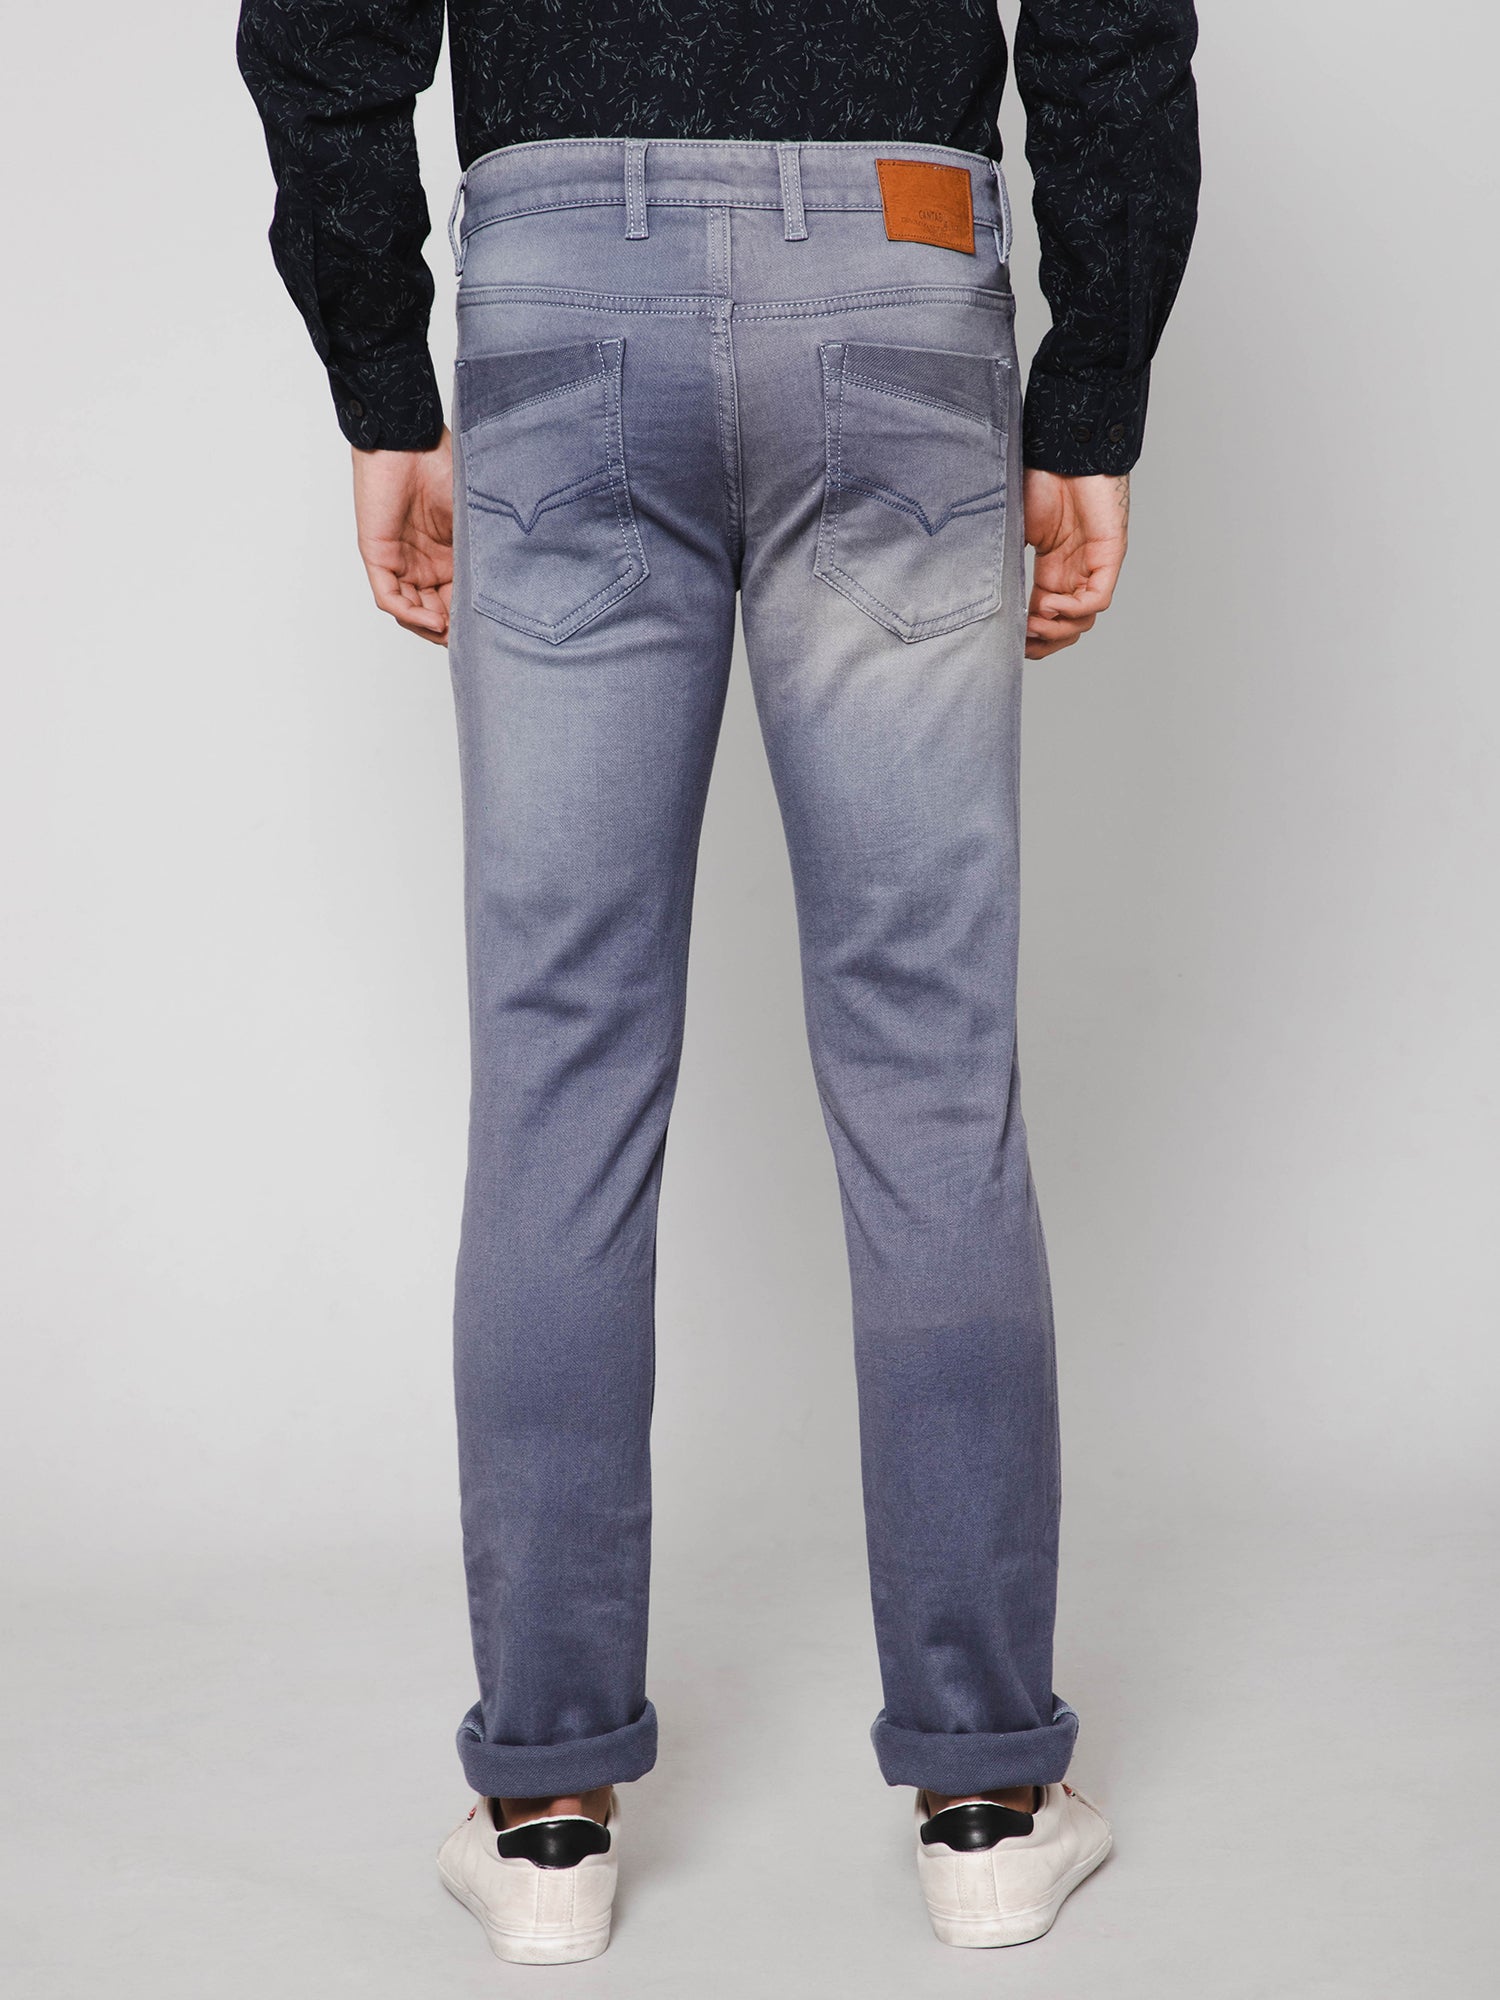 Half Double Colors Unique Zipper Button Jeans Pants – Tomscloth